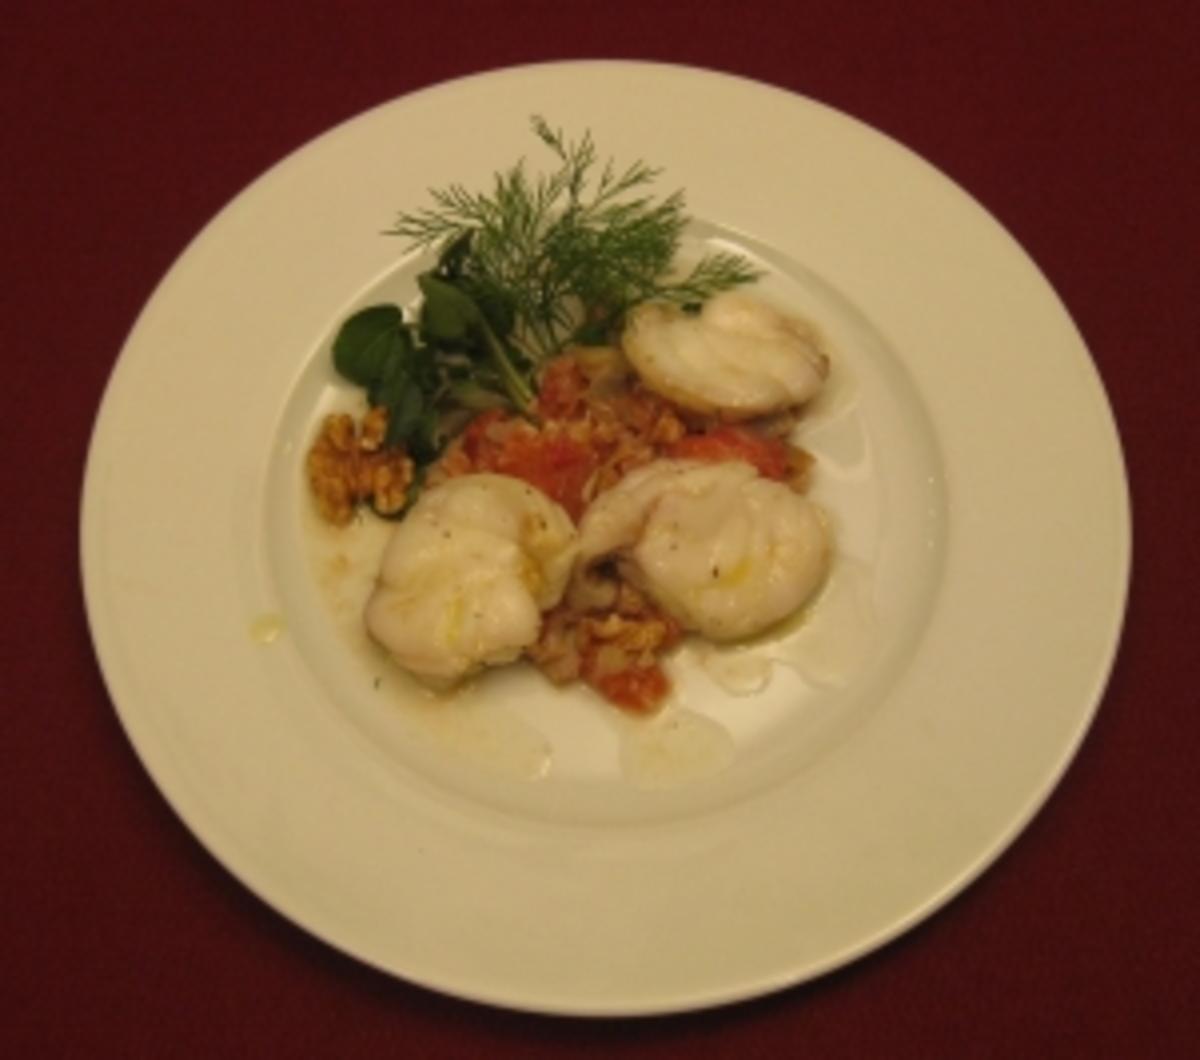 Seeteufelsalat mit Artischocken, Tomaten und Walnüssen - Rezept